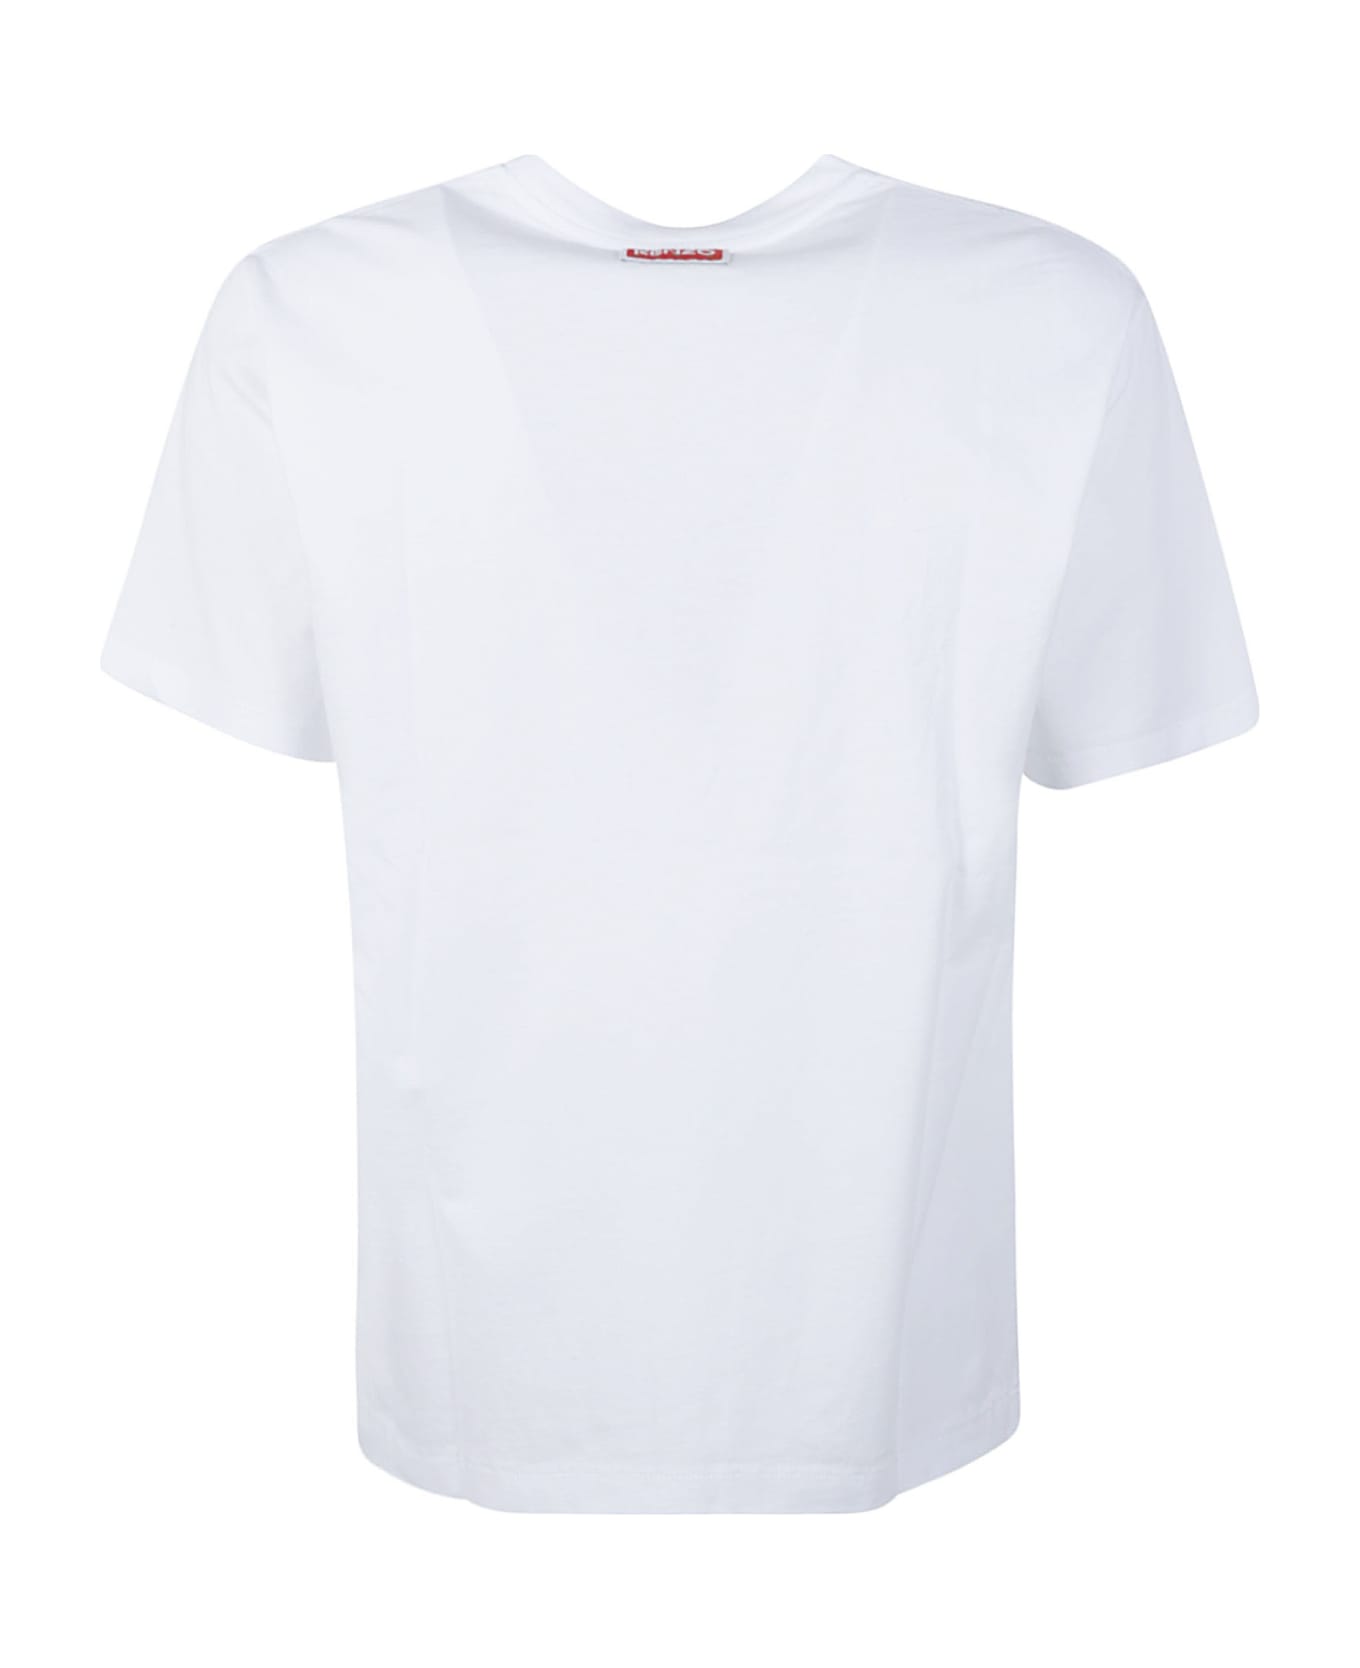 Kenzo Boke Flower T-shirt - White